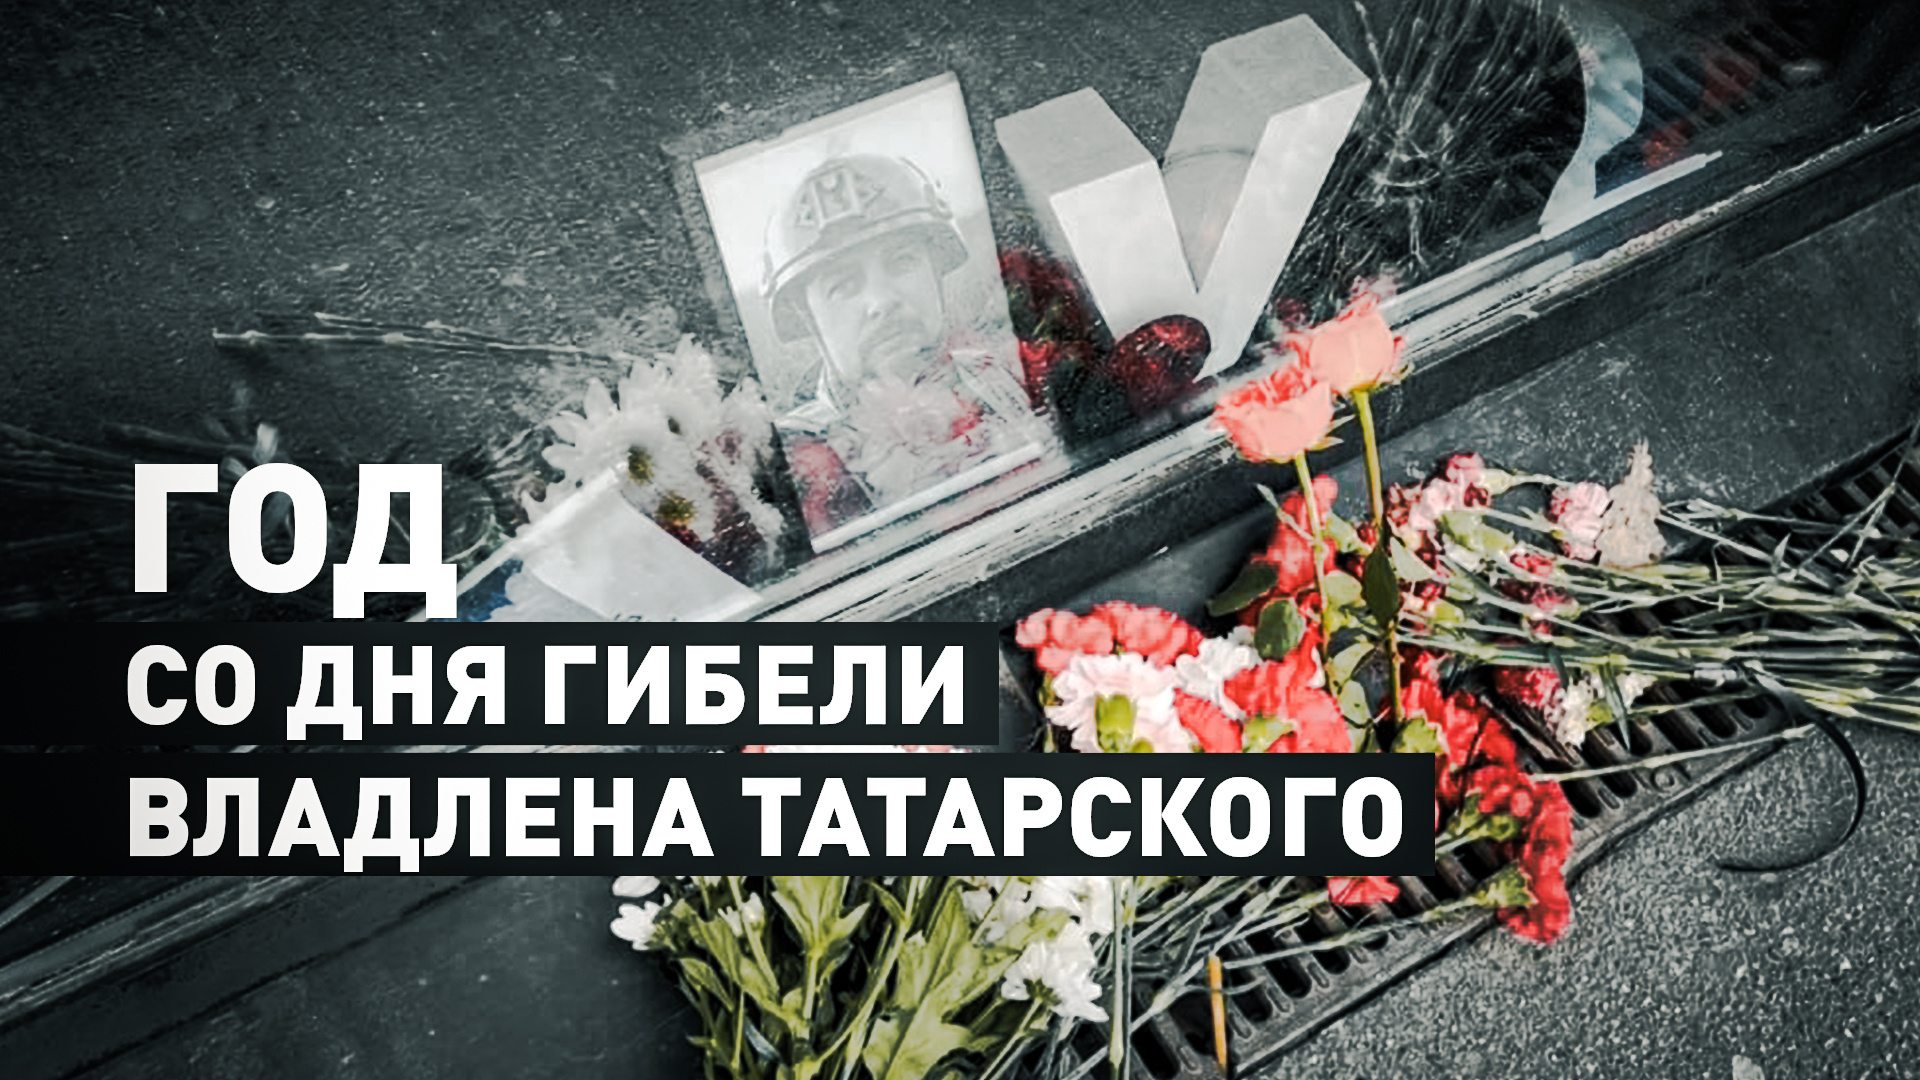 Петербуржцы почтили память военкора Владлена Татарского в годовщину его гибели